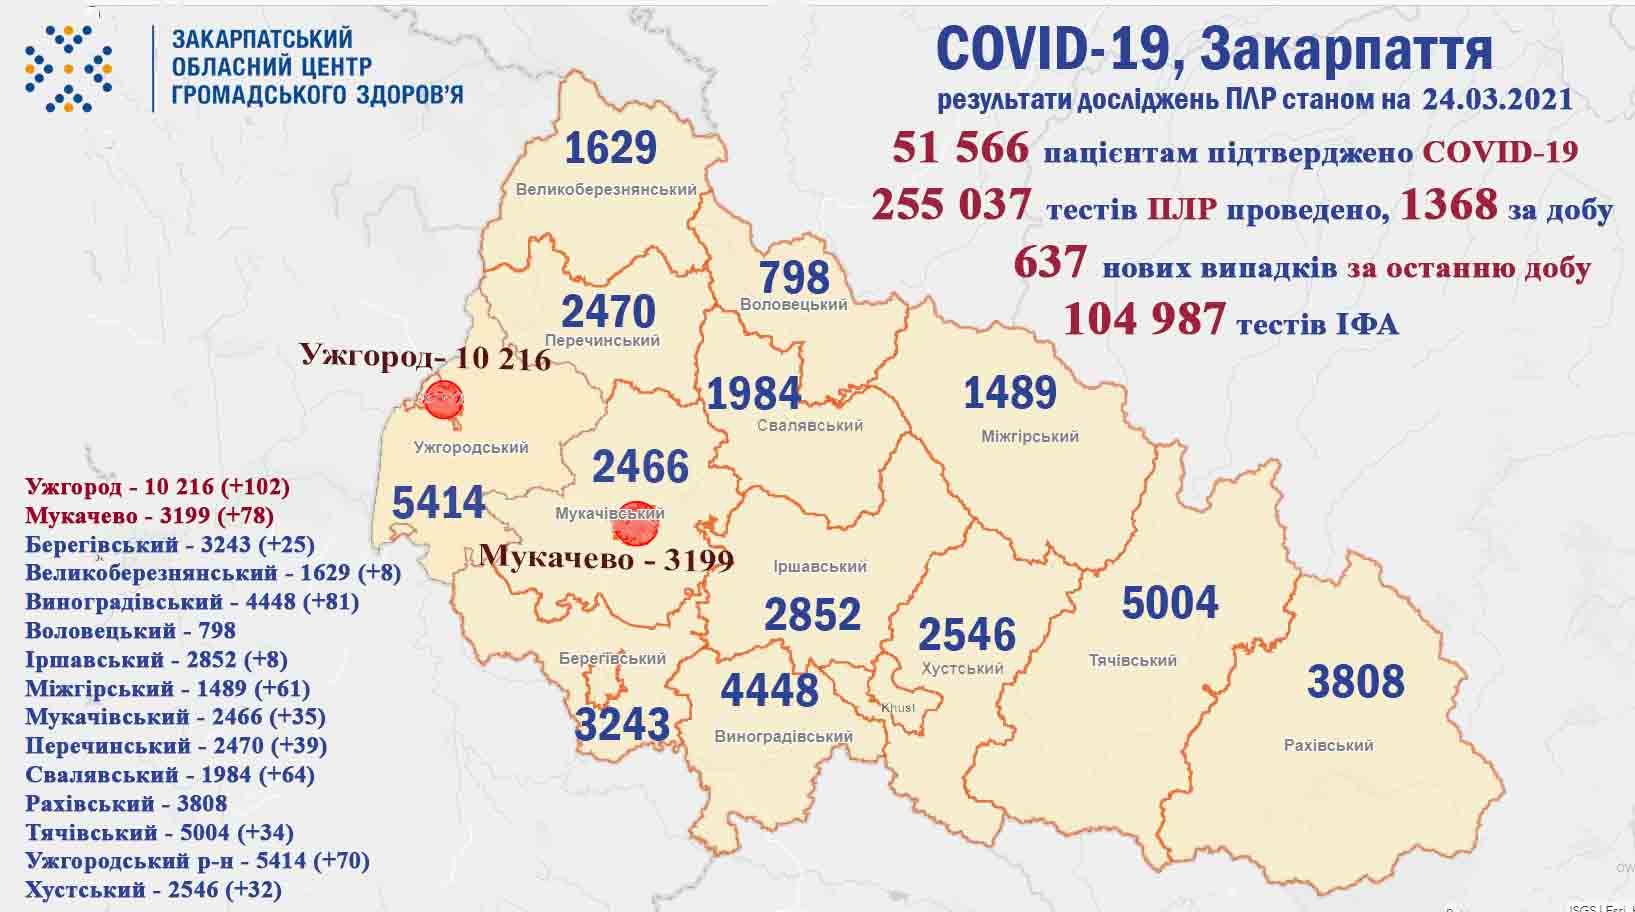 637 випадків COVID-19 за добу виявлено на Закарпатті, 27 (!) пацієнтів померли